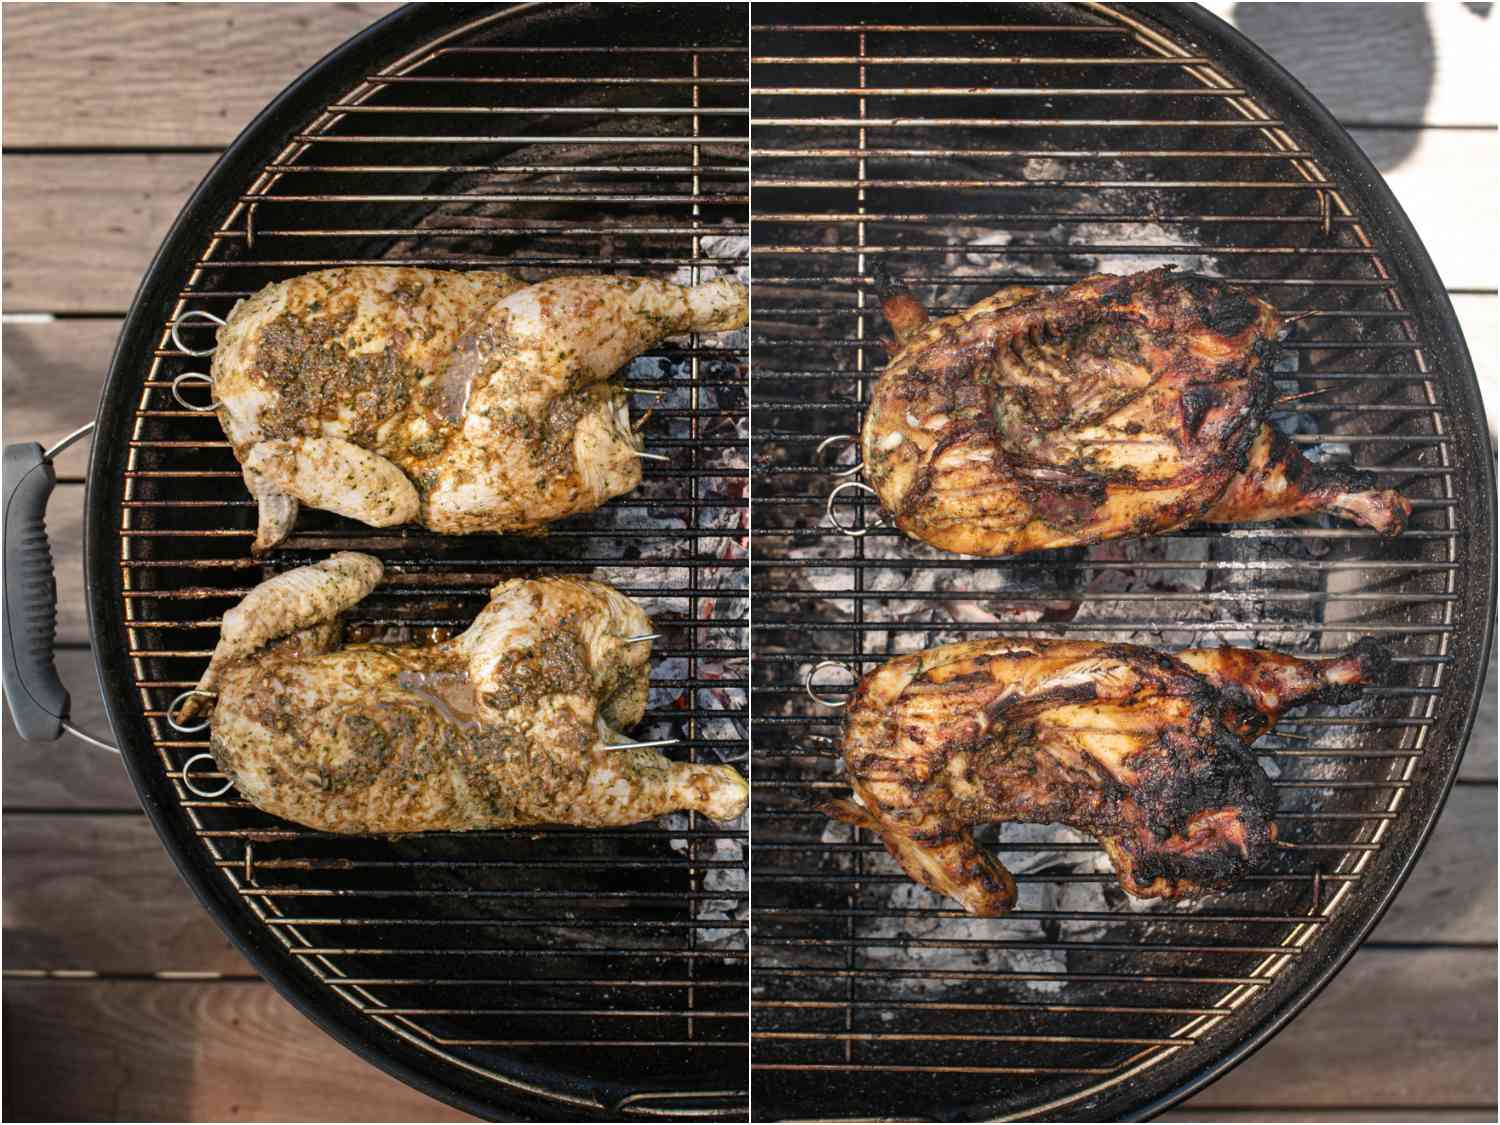 拼贴:半只鸡放在烤架的冷面开始;鸡肉半份转移到烤架热的一面完成gydF4y2Ba